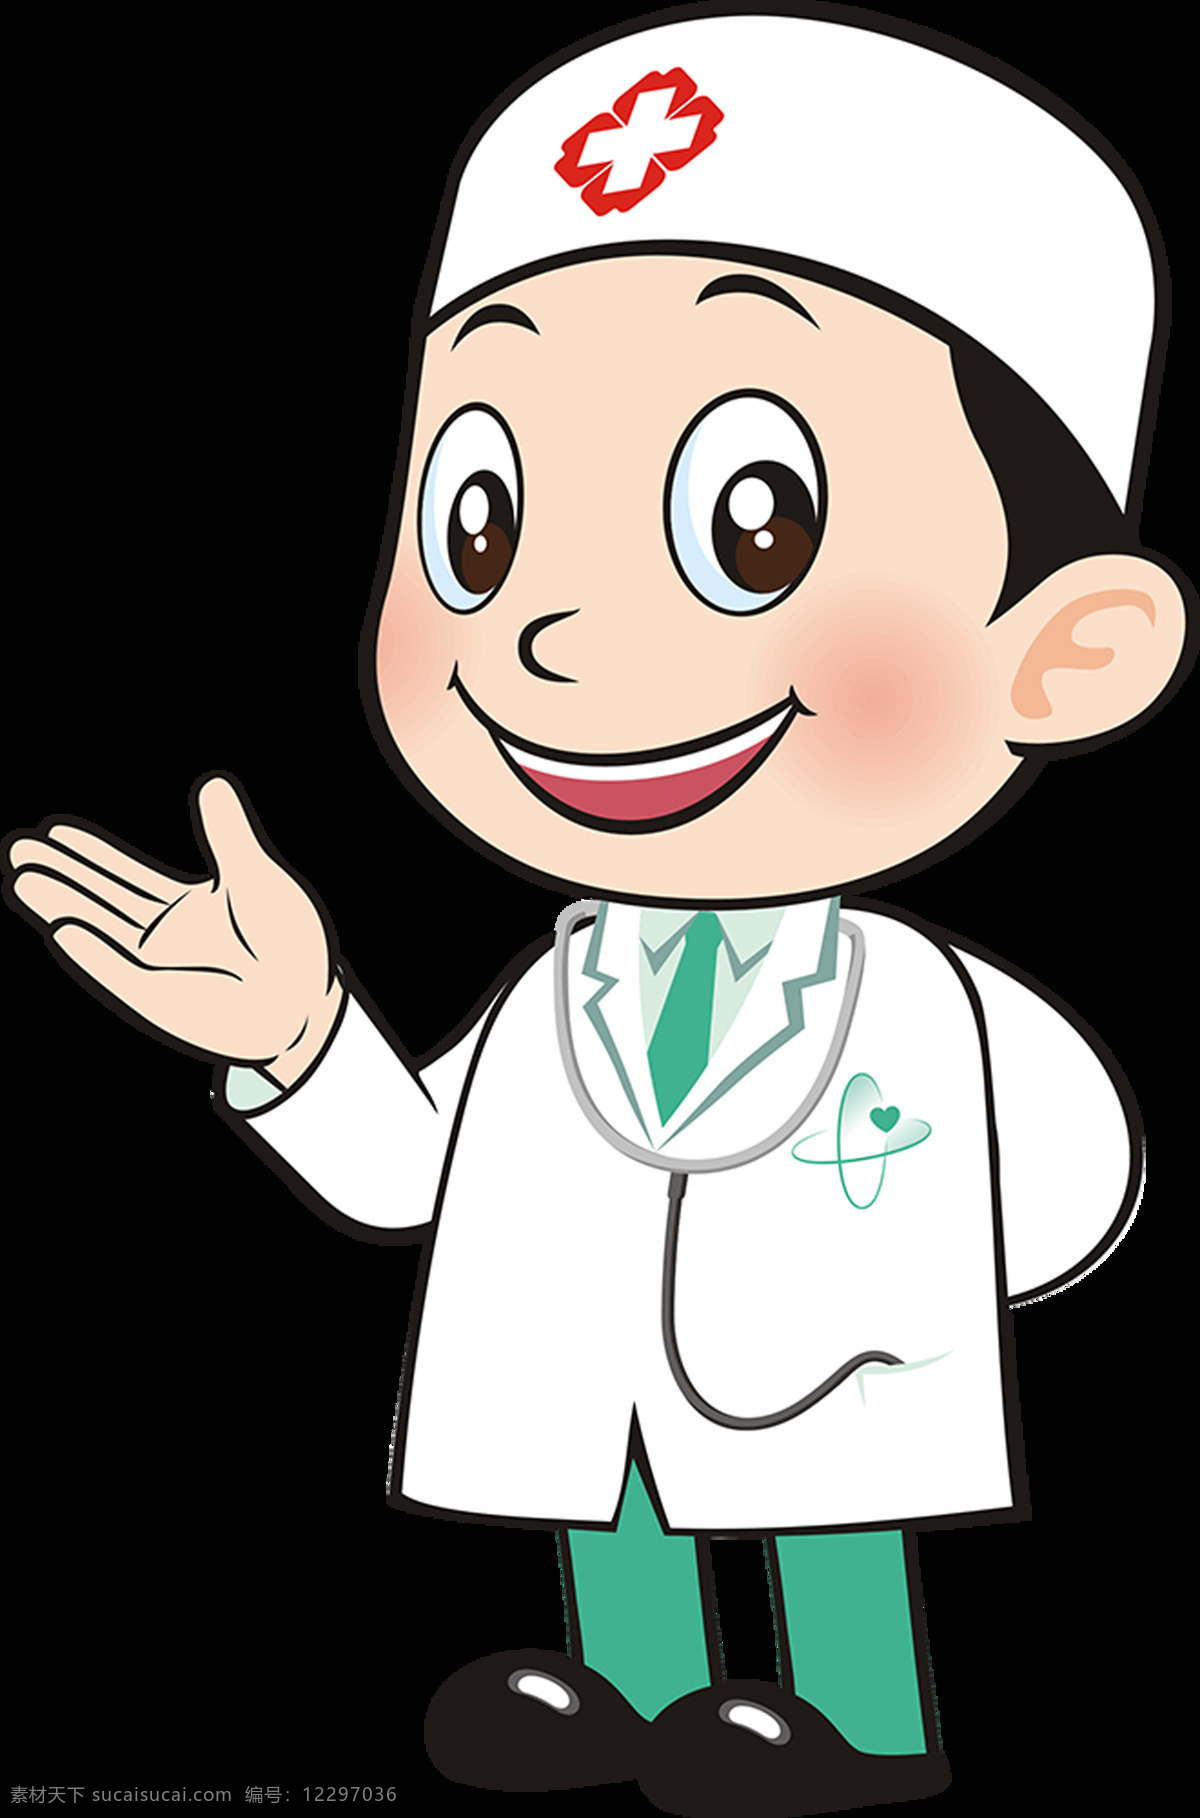 卡通医生 医护人员 医院 医生提醒 医生提示 医生卡通 平面设计 标志图标 公共标识标志